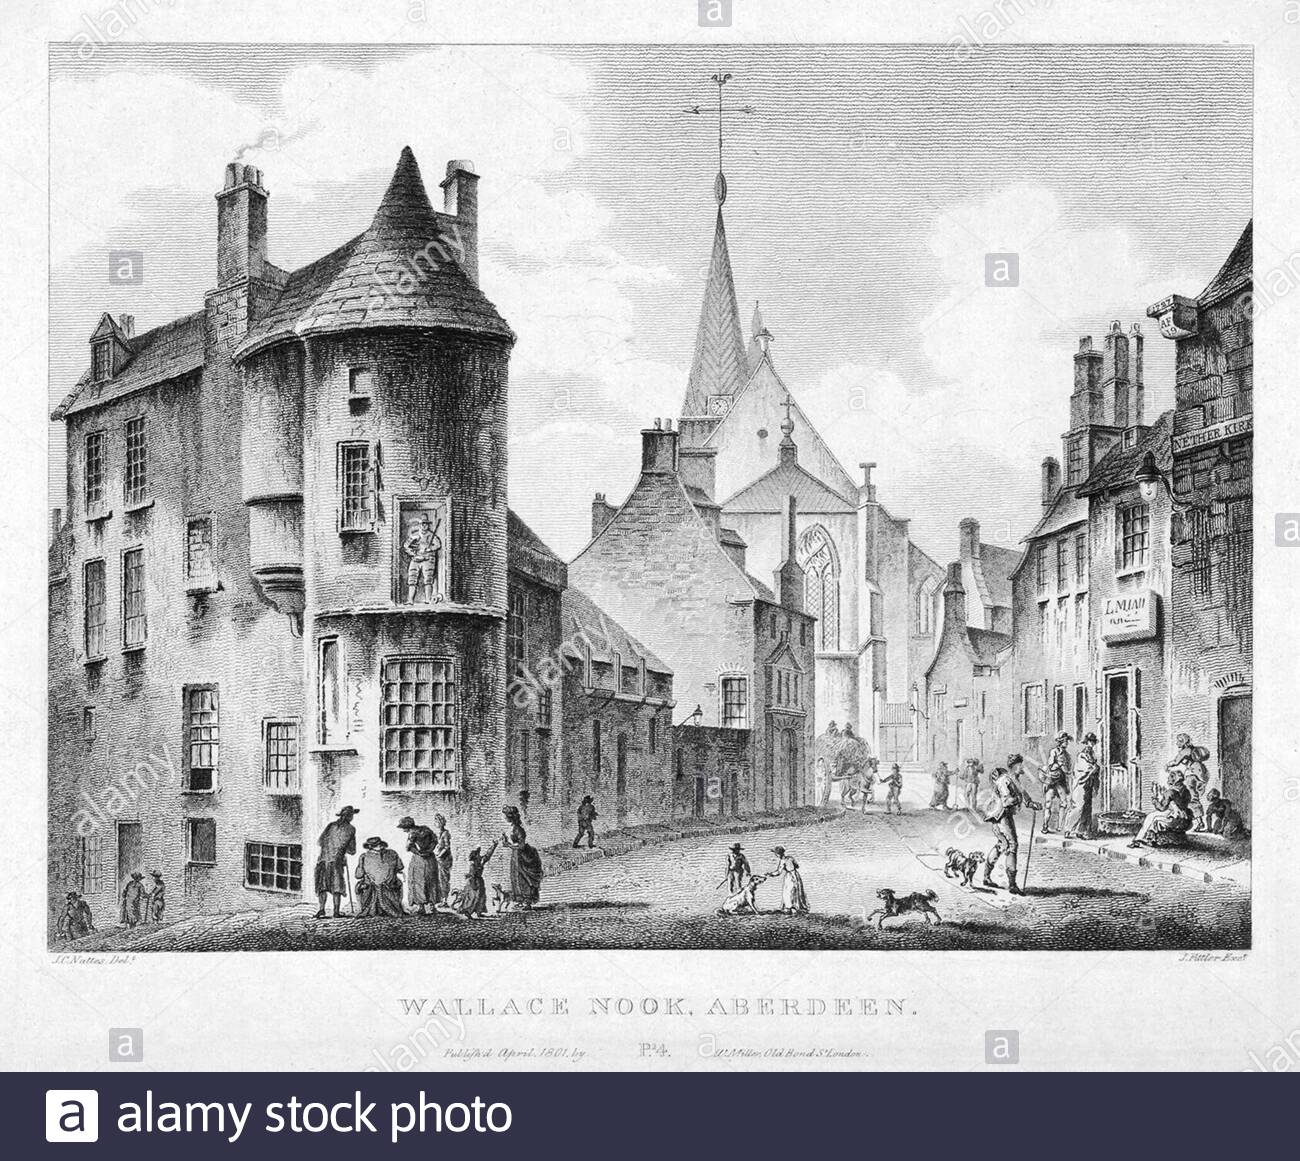 Wallace NOOK, Aberdeen, Schottland, Jahrgangsstich von 1804 Stockfoto